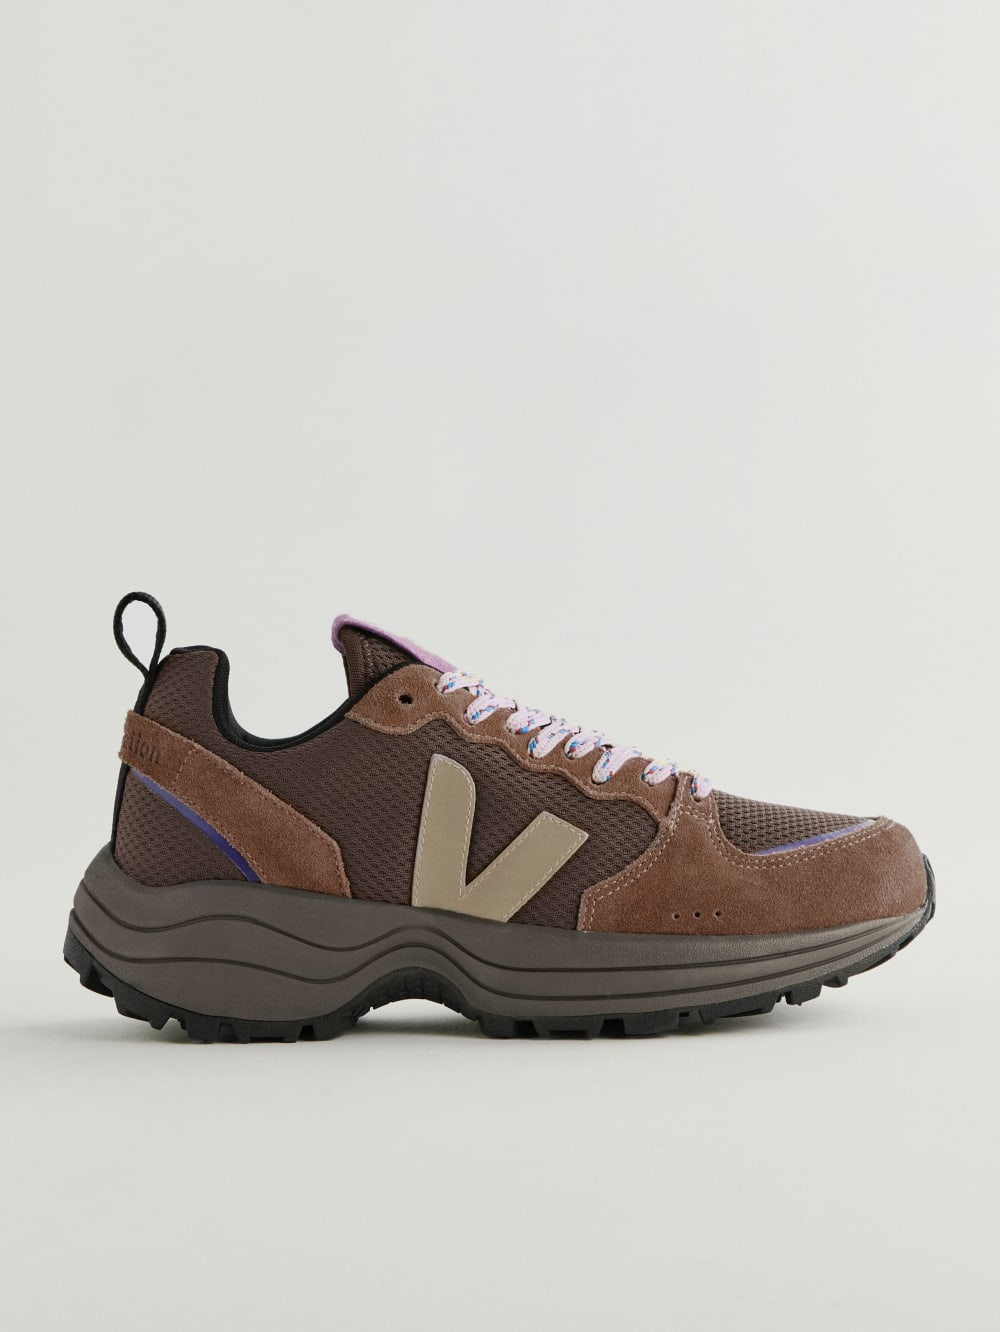 Veja x Reformation + Venturi Sneakers in Walnut